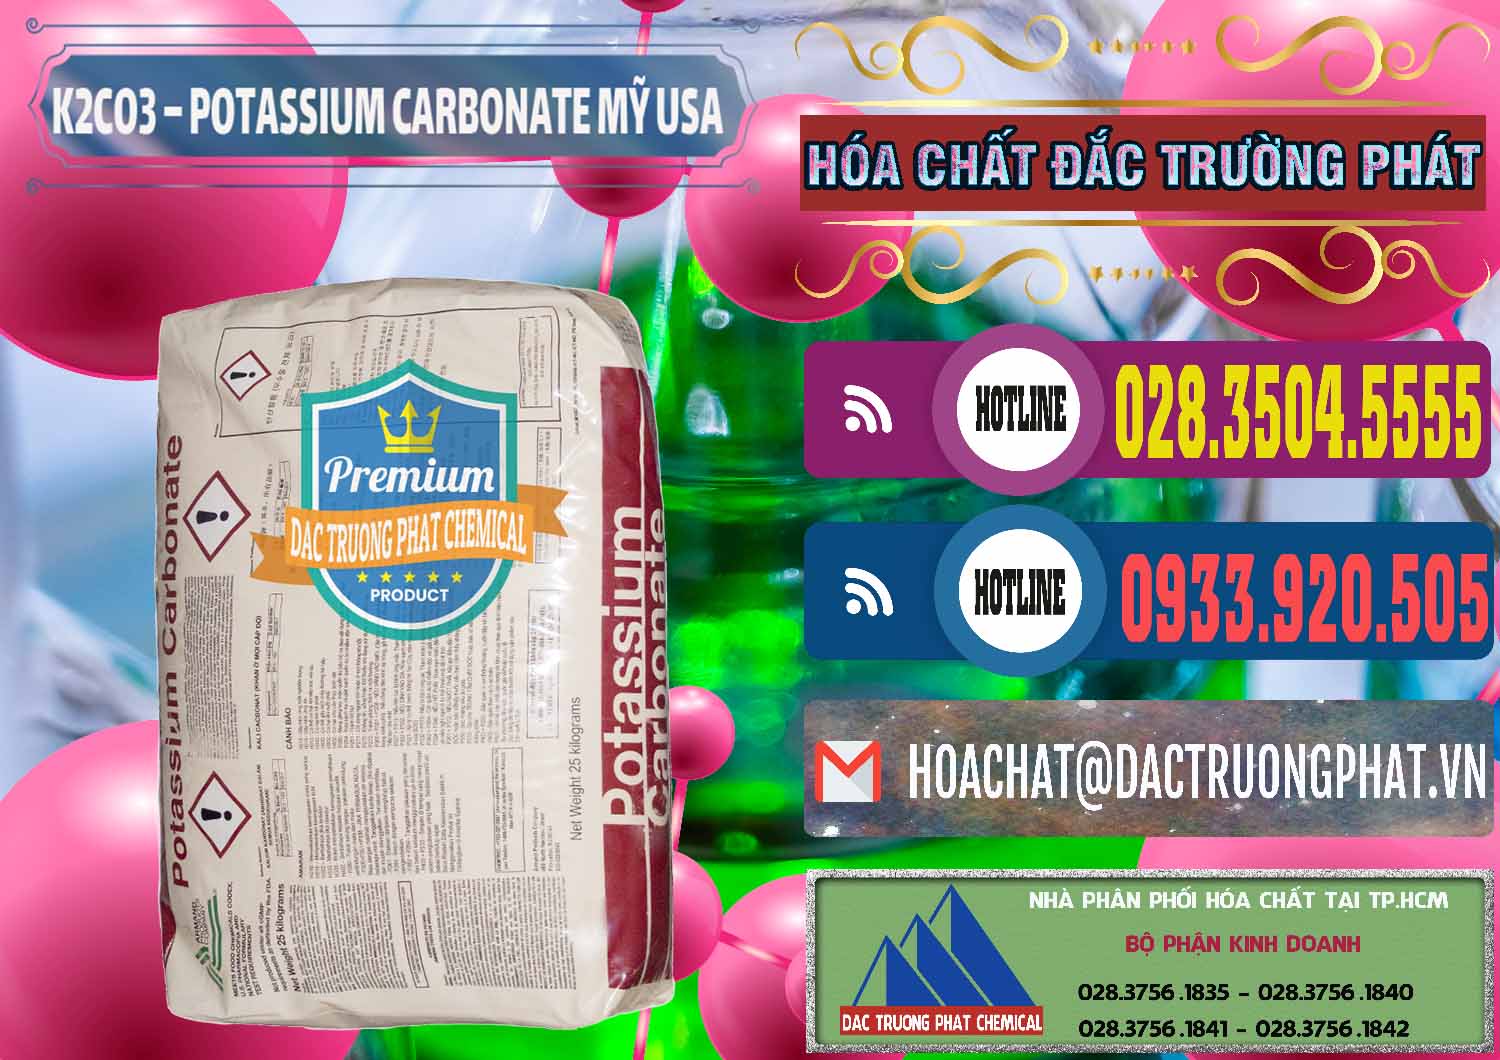 Cty chuyên bán và cung cấp K2Co3 – Potassium Carbonate Mỹ USA - 0082 - Nơi nhập khẩu & cung cấp hóa chất tại TP.HCM - muabanhoachat.com.vn